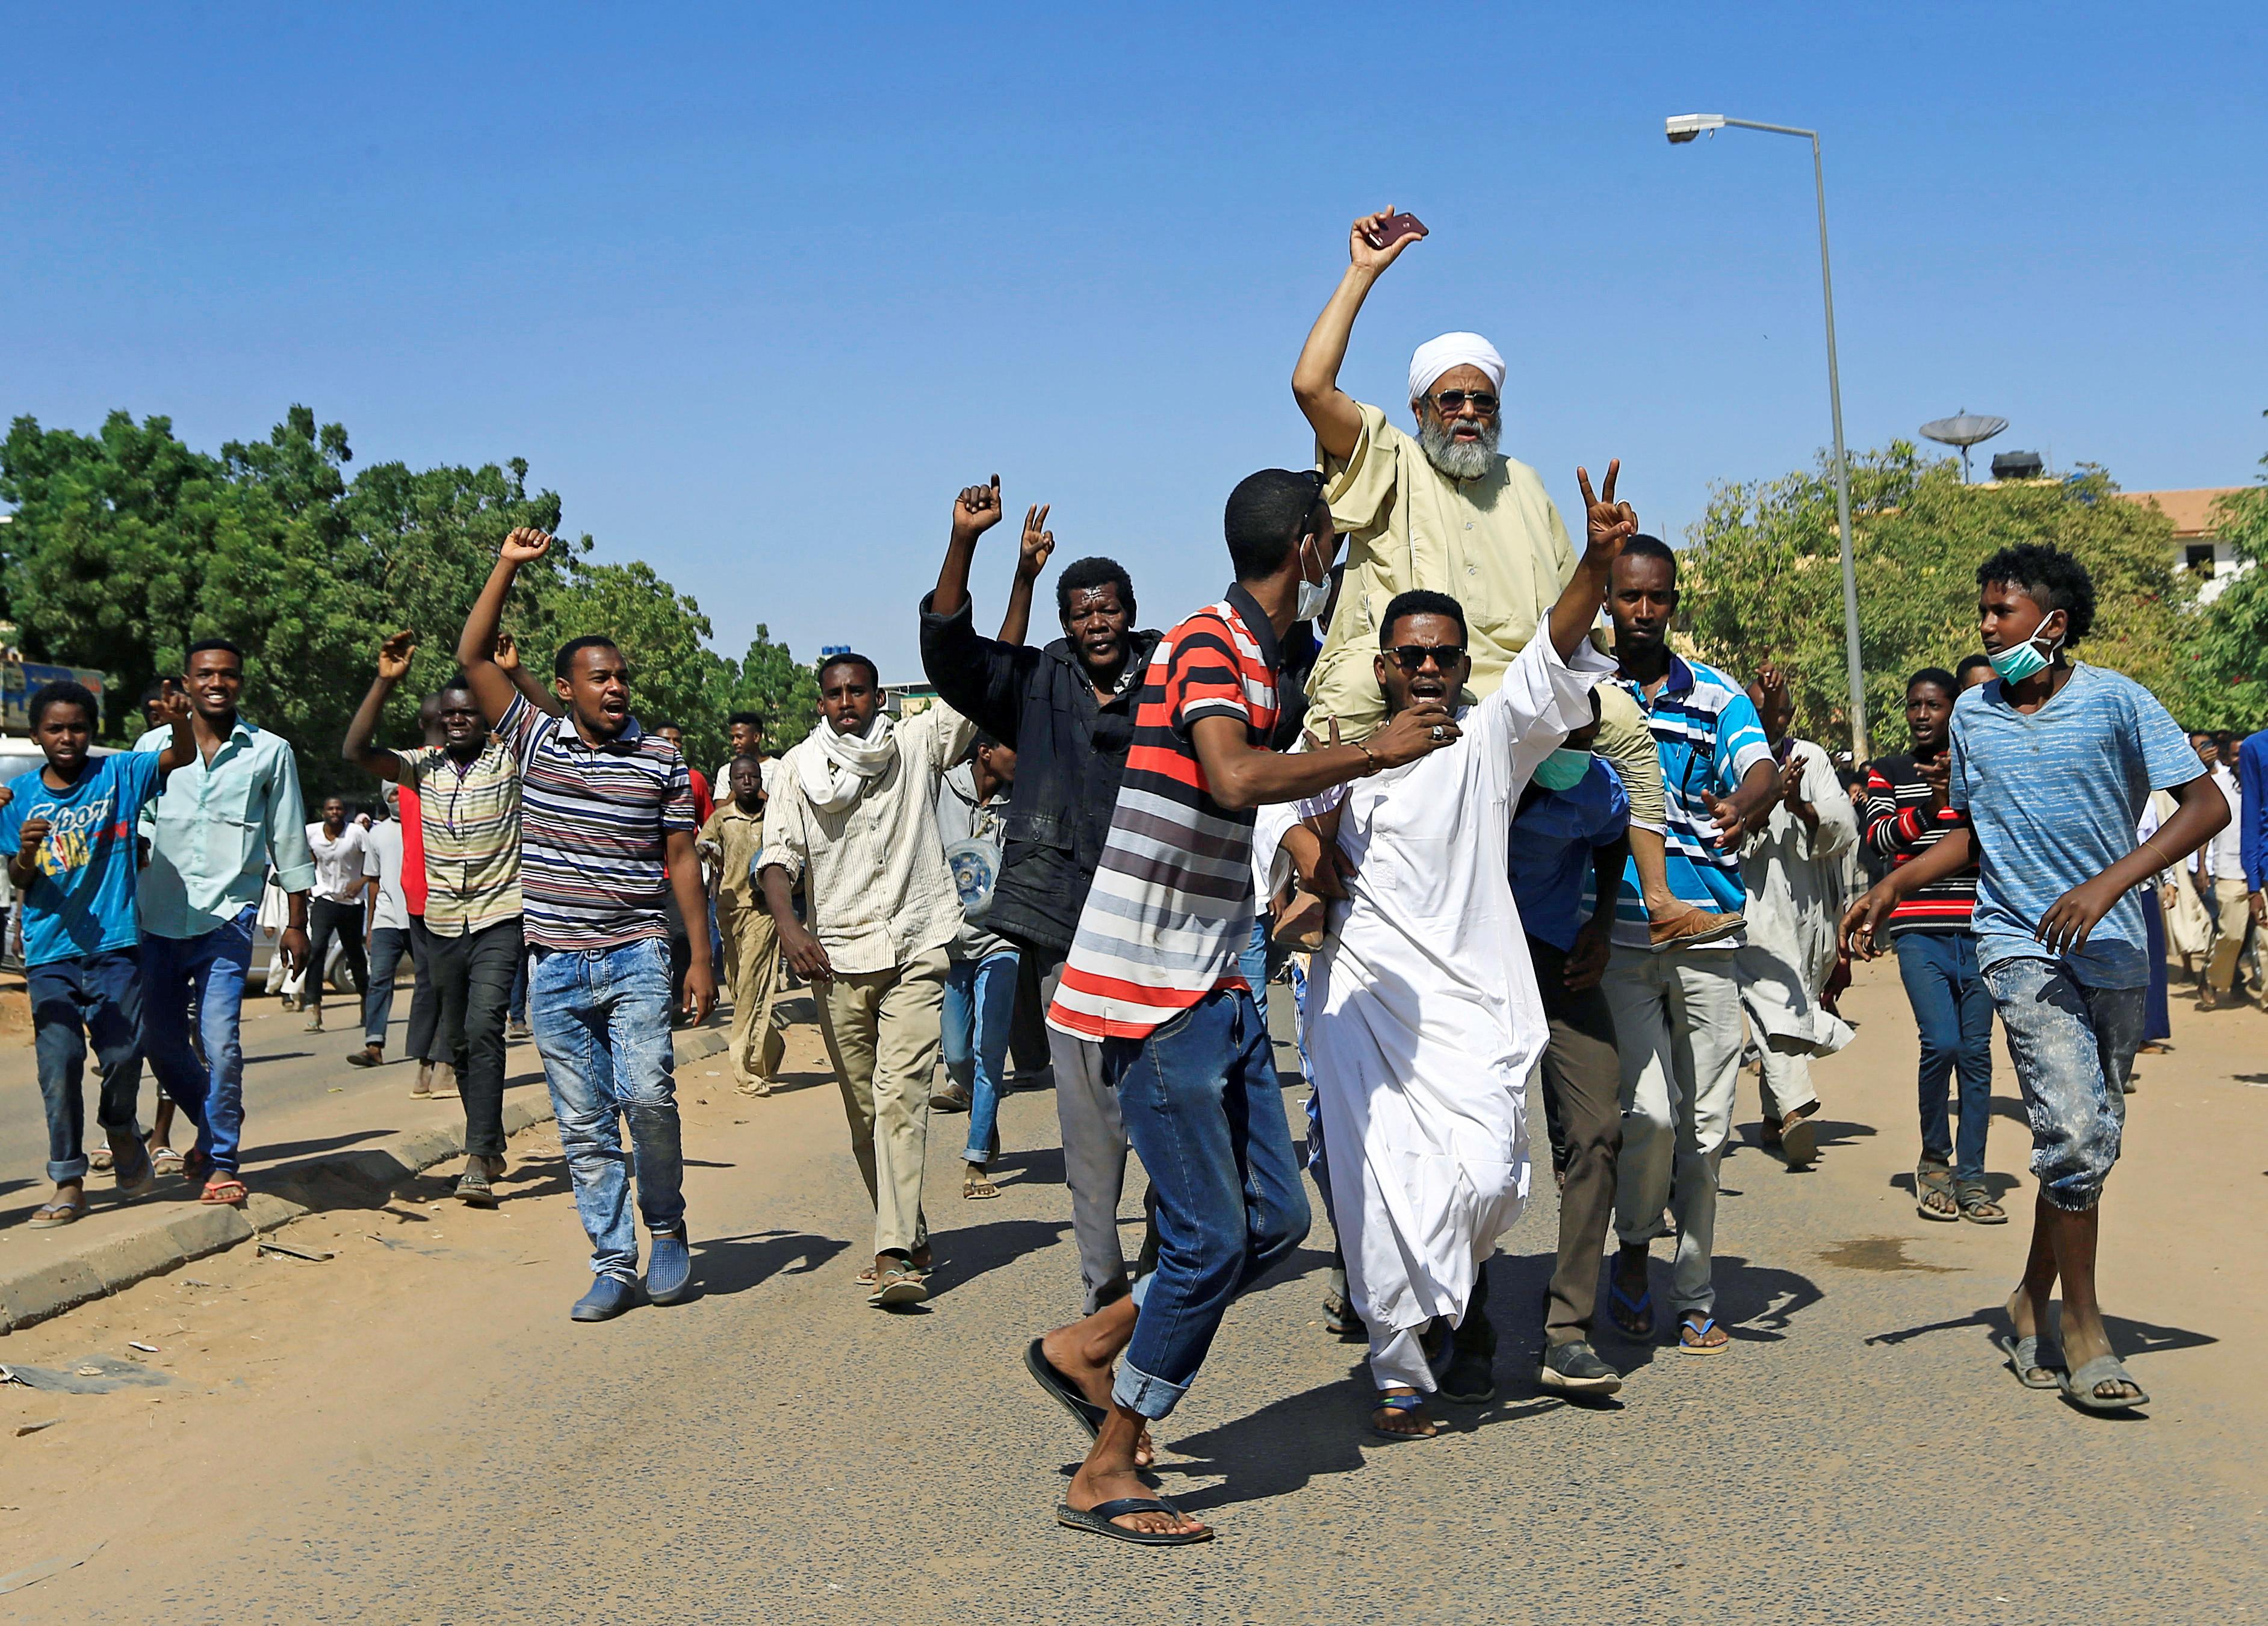   الاتحاد الأوروبى يحث على الهدوء في السودان ويدعو إلى تحول ديمقراطى